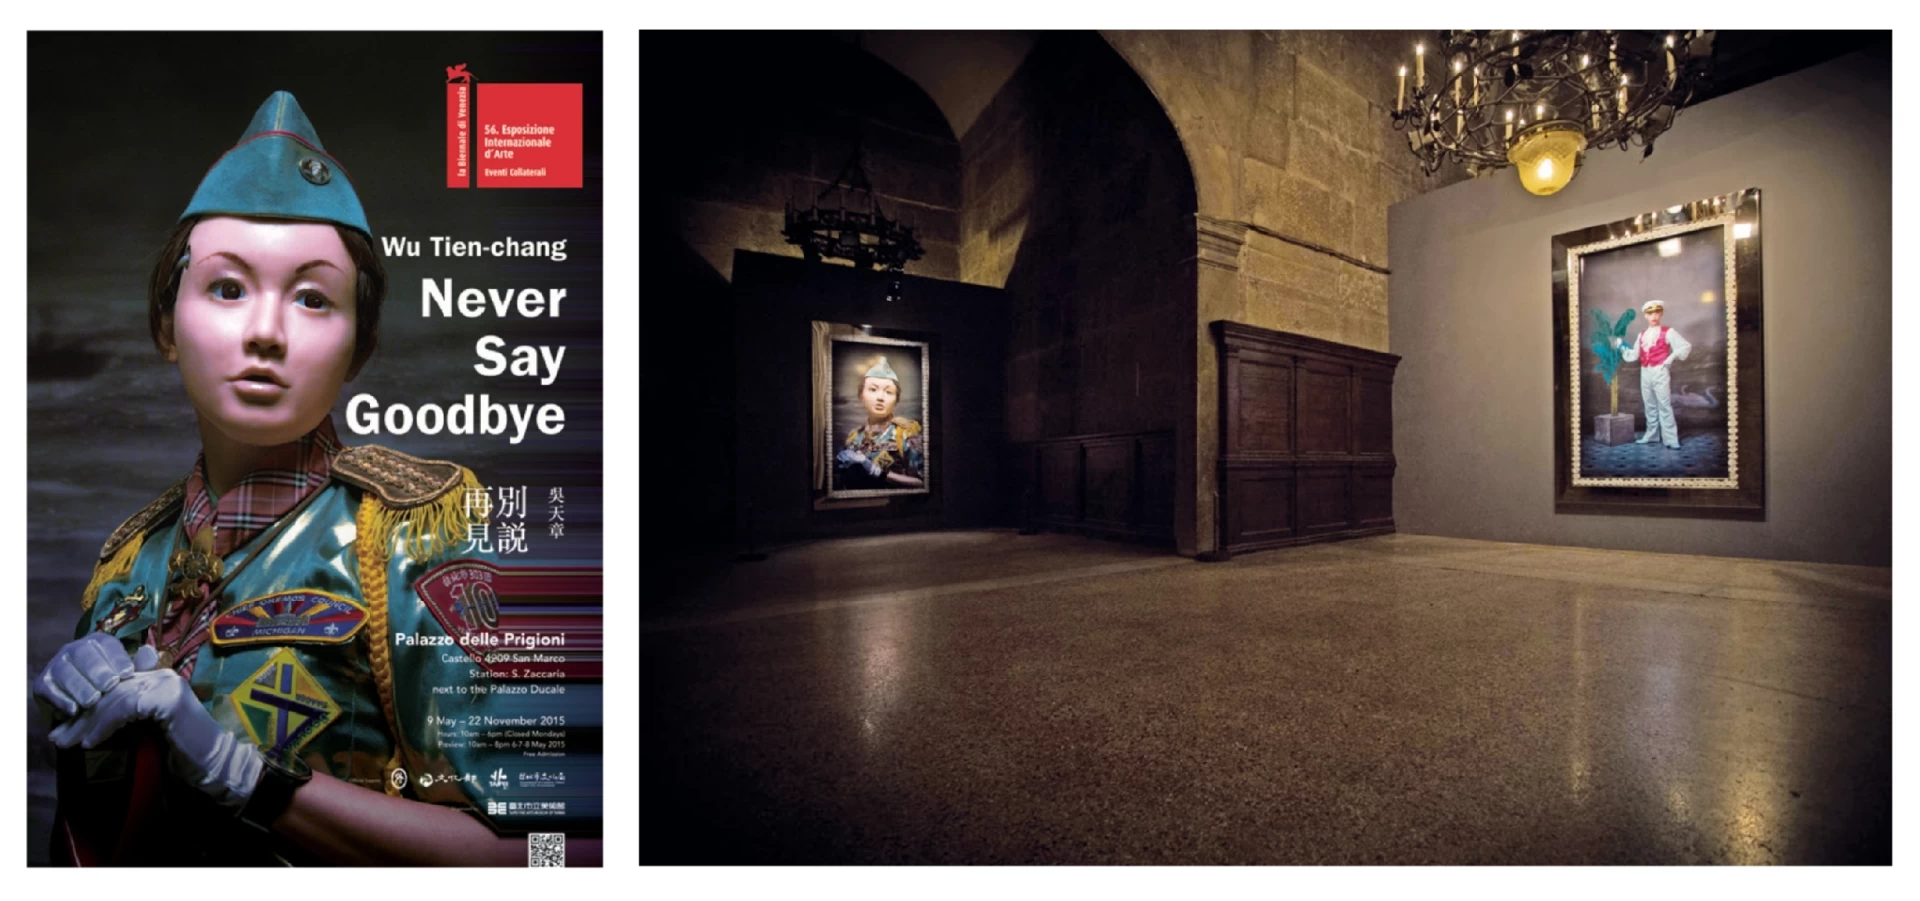 第56屆威尼斯雙年展台灣館「吳天章：別說再見」海報及展場一景，2015.05-圖片